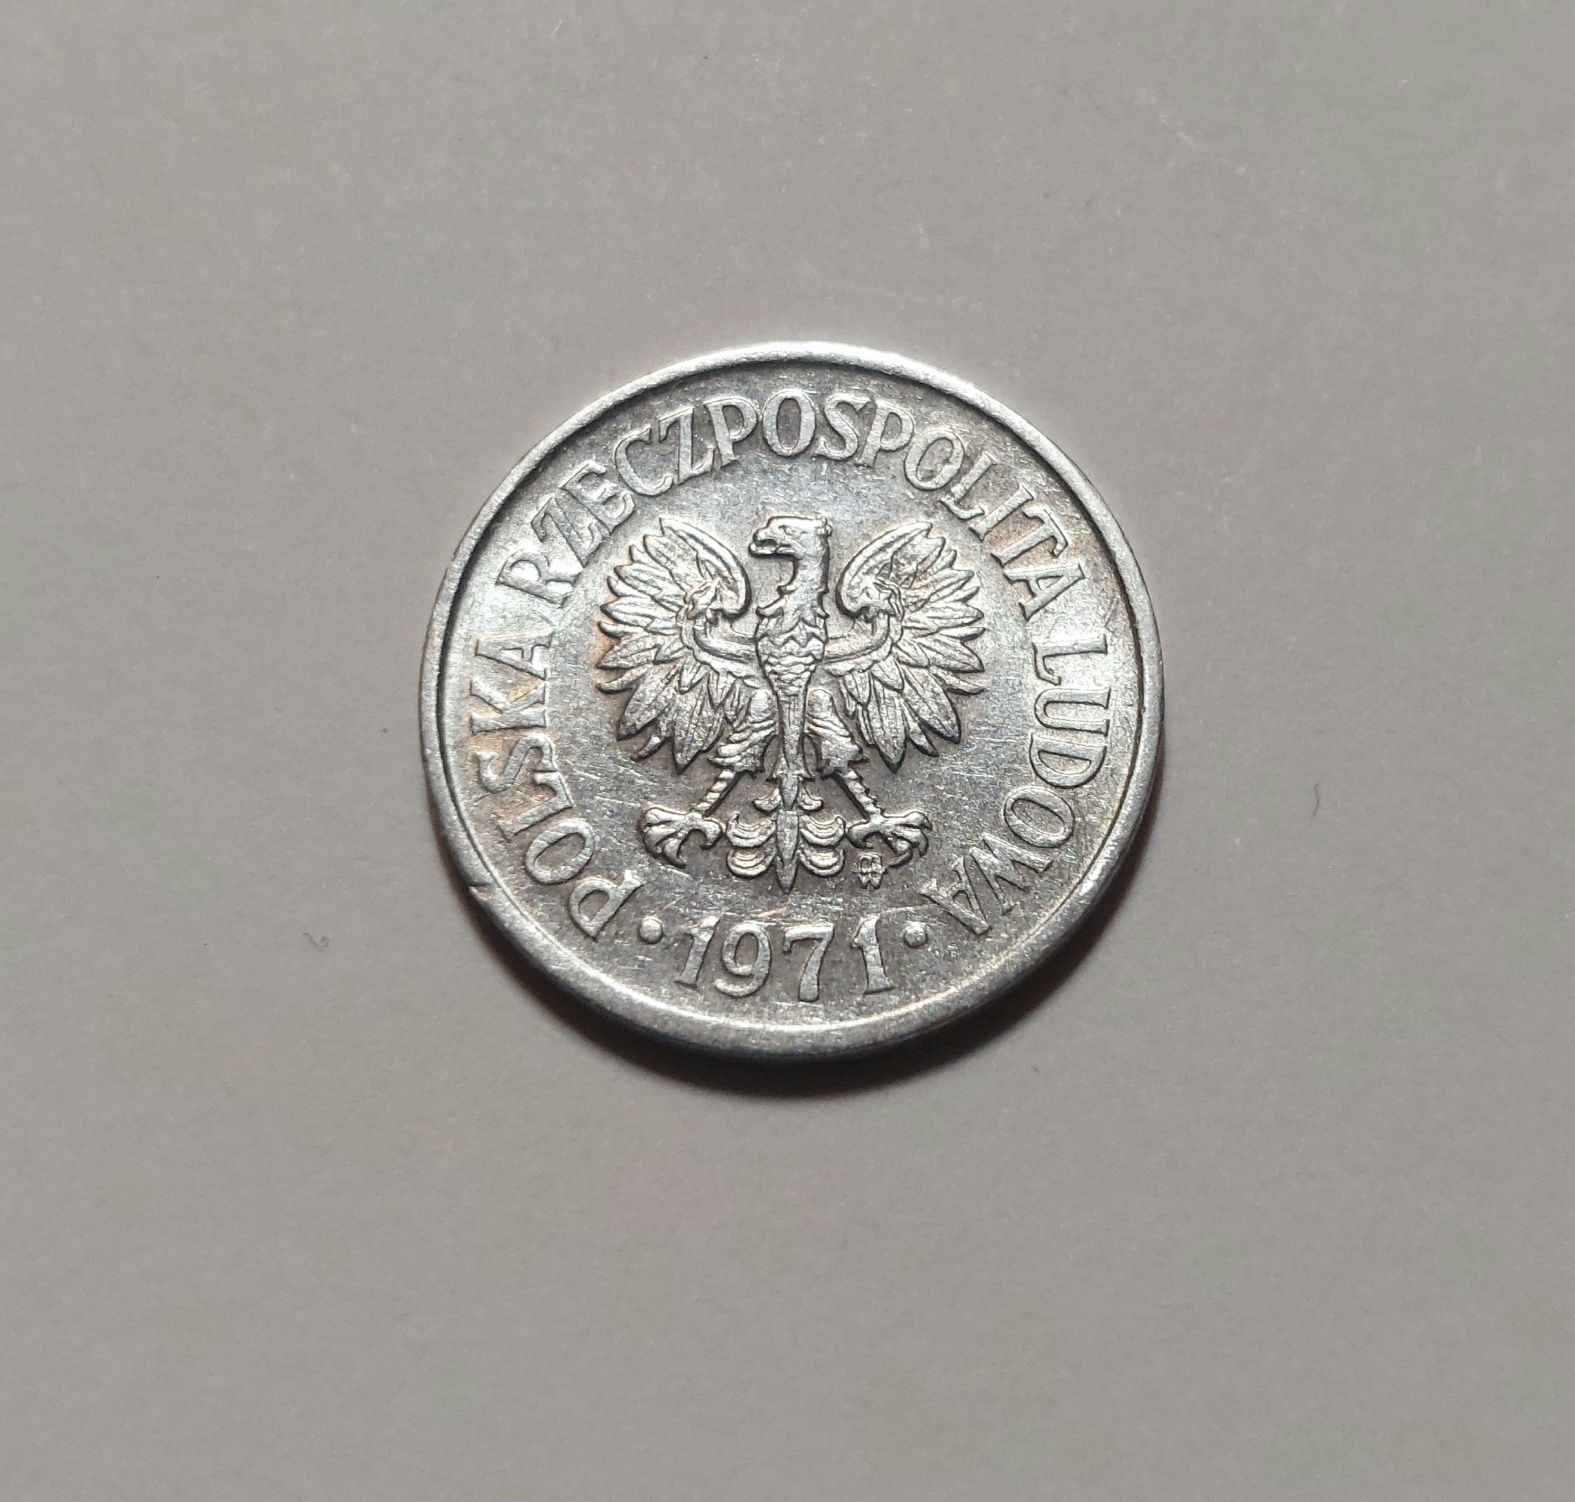 10 groszy 1971 PRL  [#373]